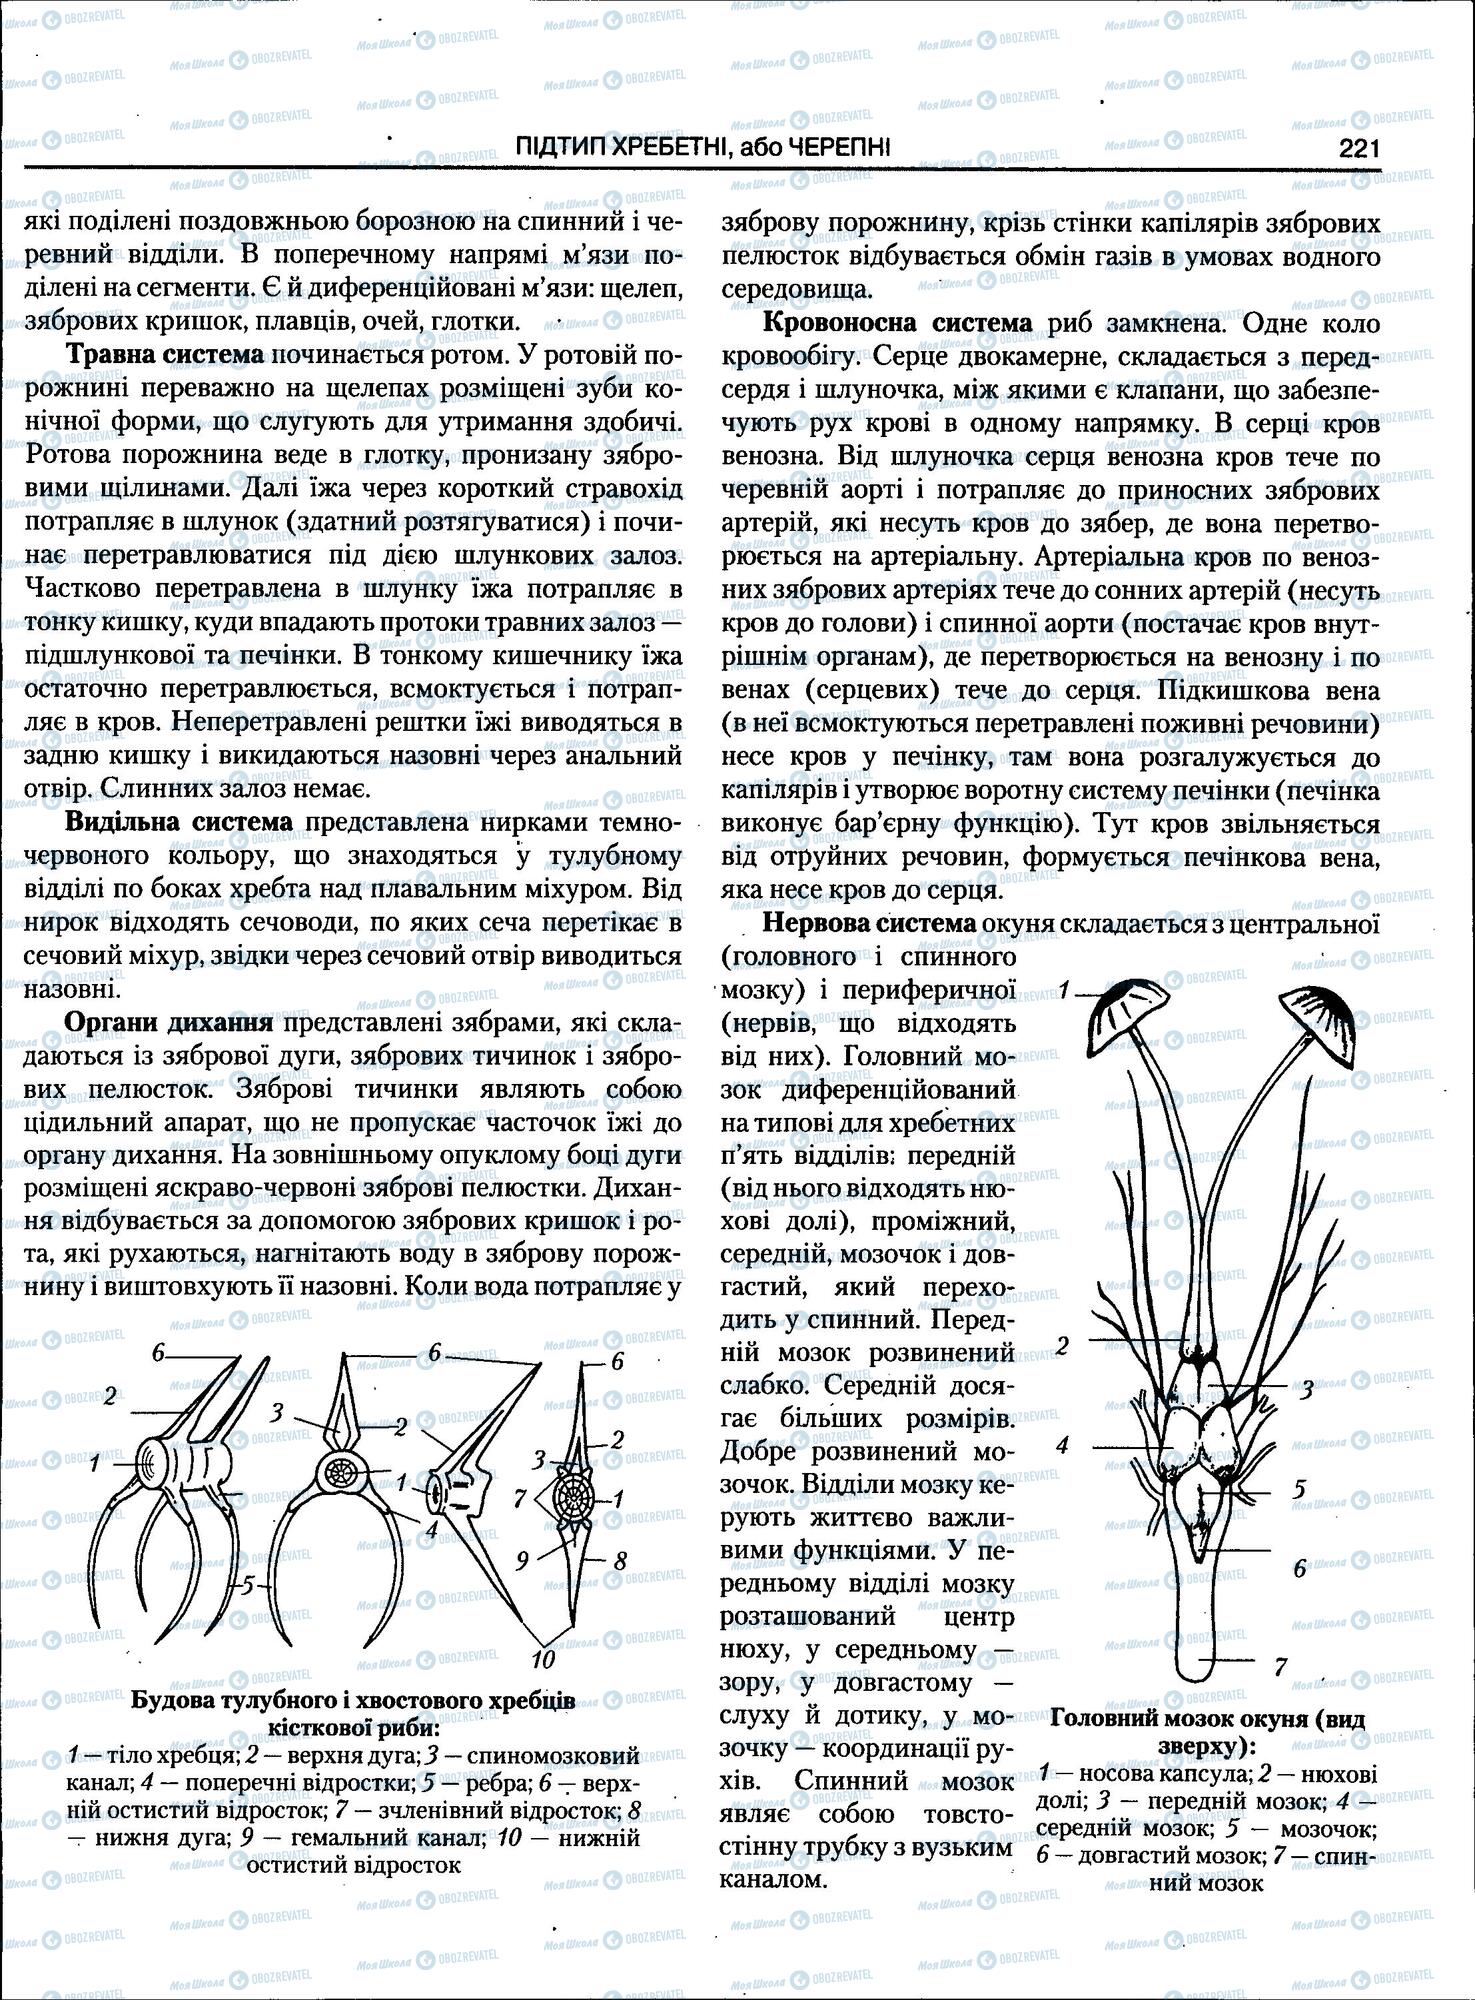 ЗНО Биология 11 класс страница 221